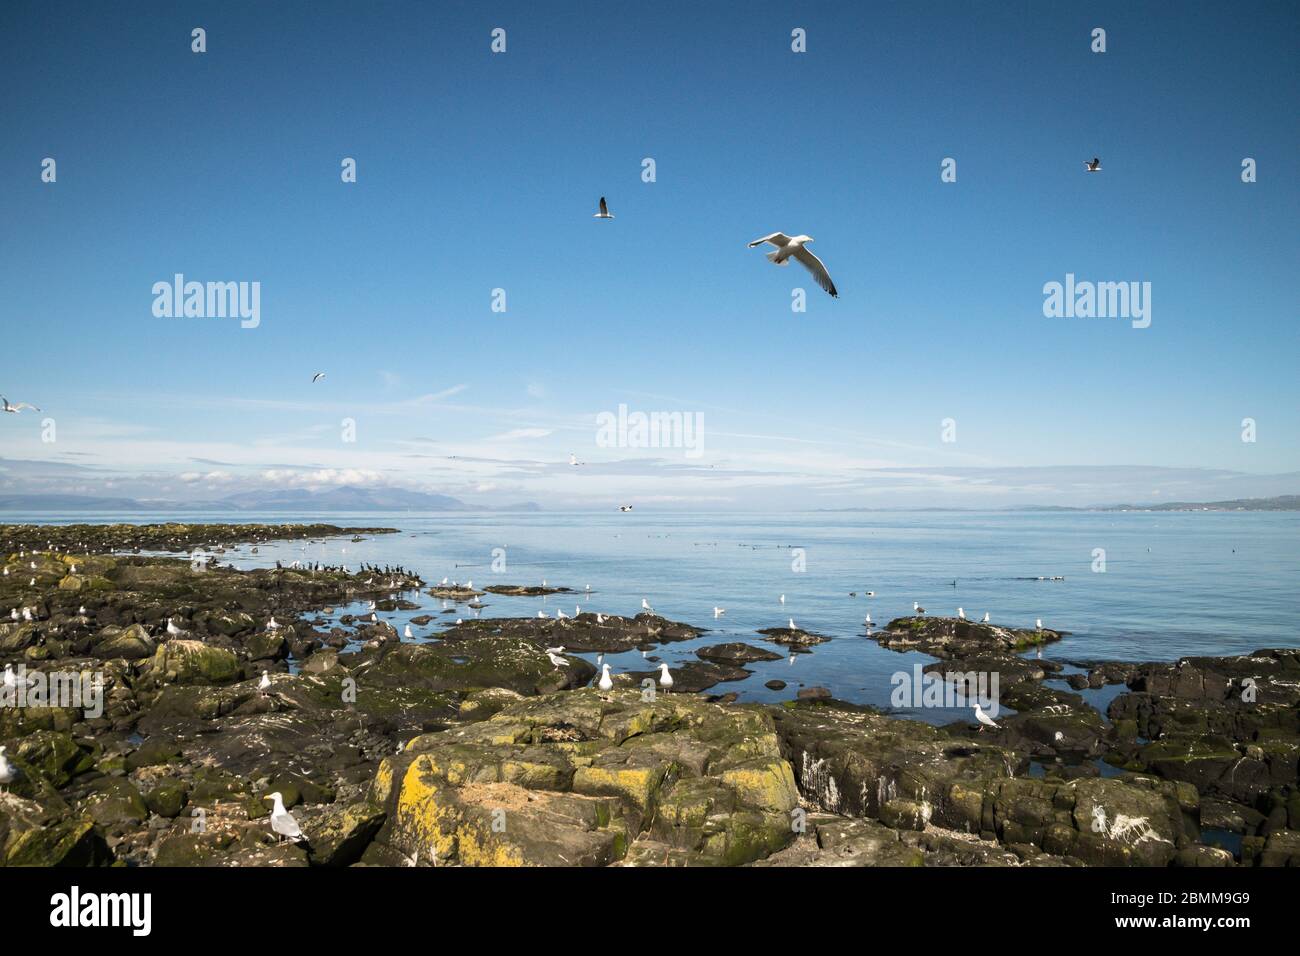 Un Goéland argenté (Larus argentatus) survole une colonie d'oiseaux de mer sur une île rocheuse, Lady Isle, Écosse, Royaume-Uni Banque D'Images